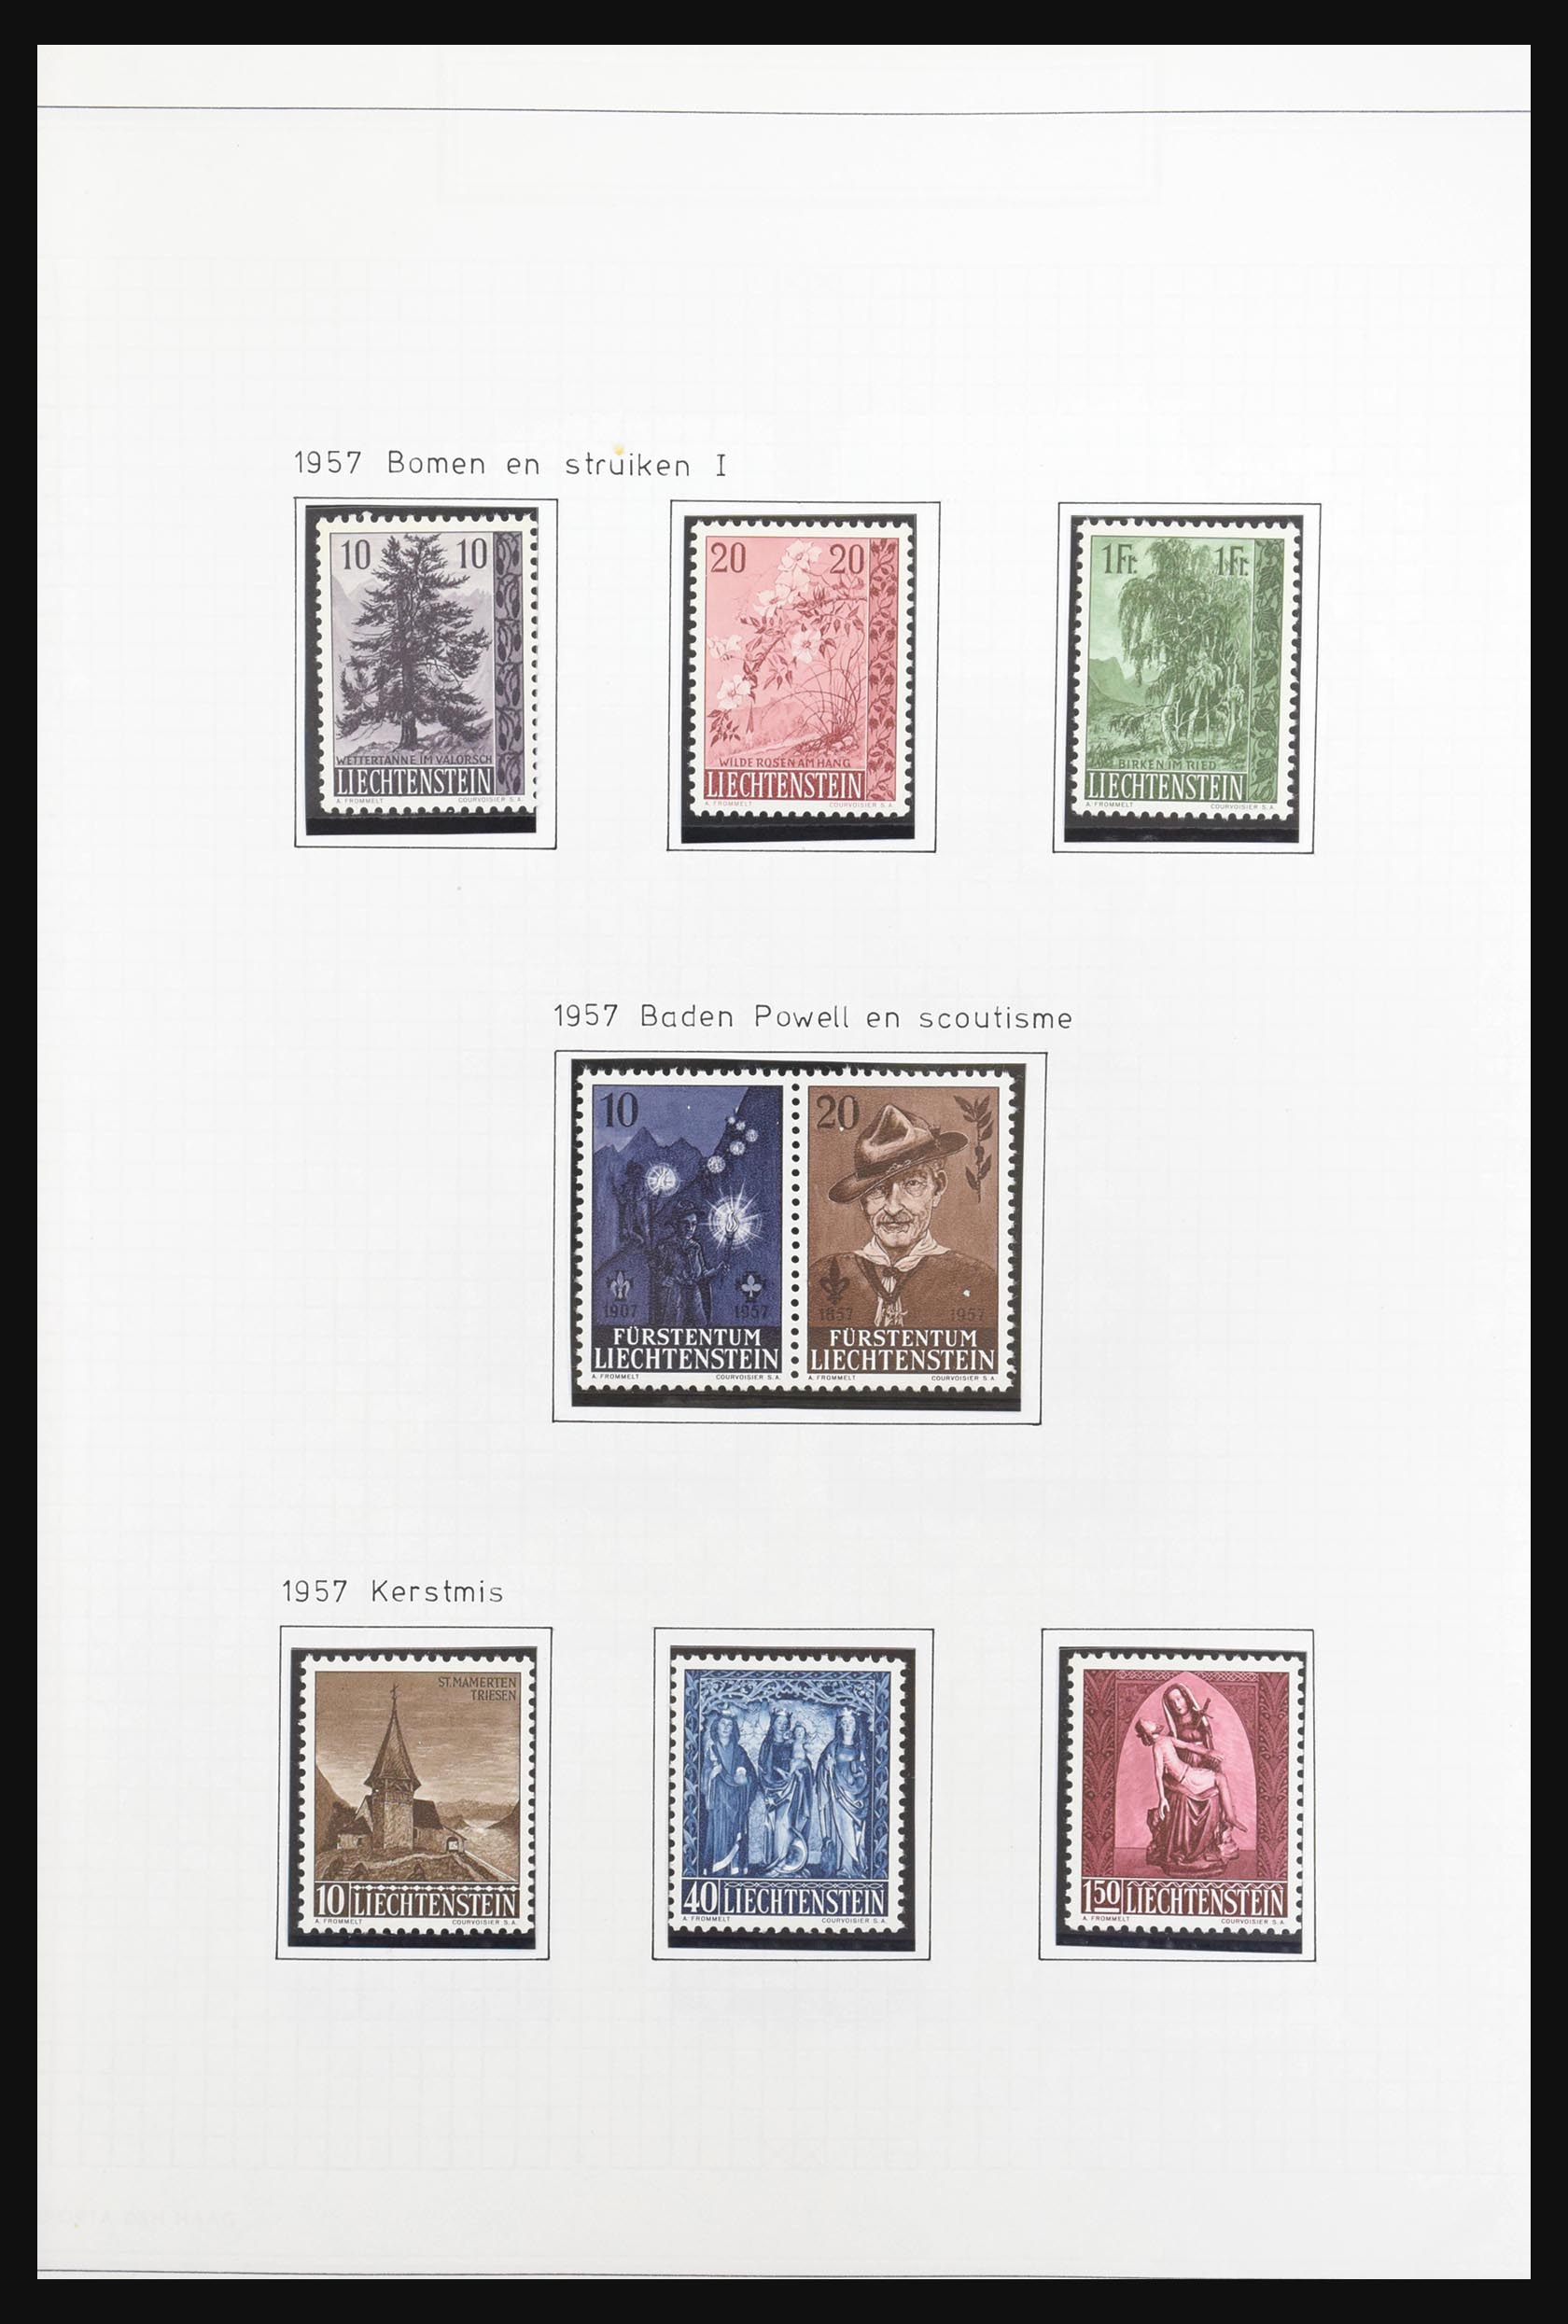 31131 032 - 31131 Liechtenstein 1912-2013.